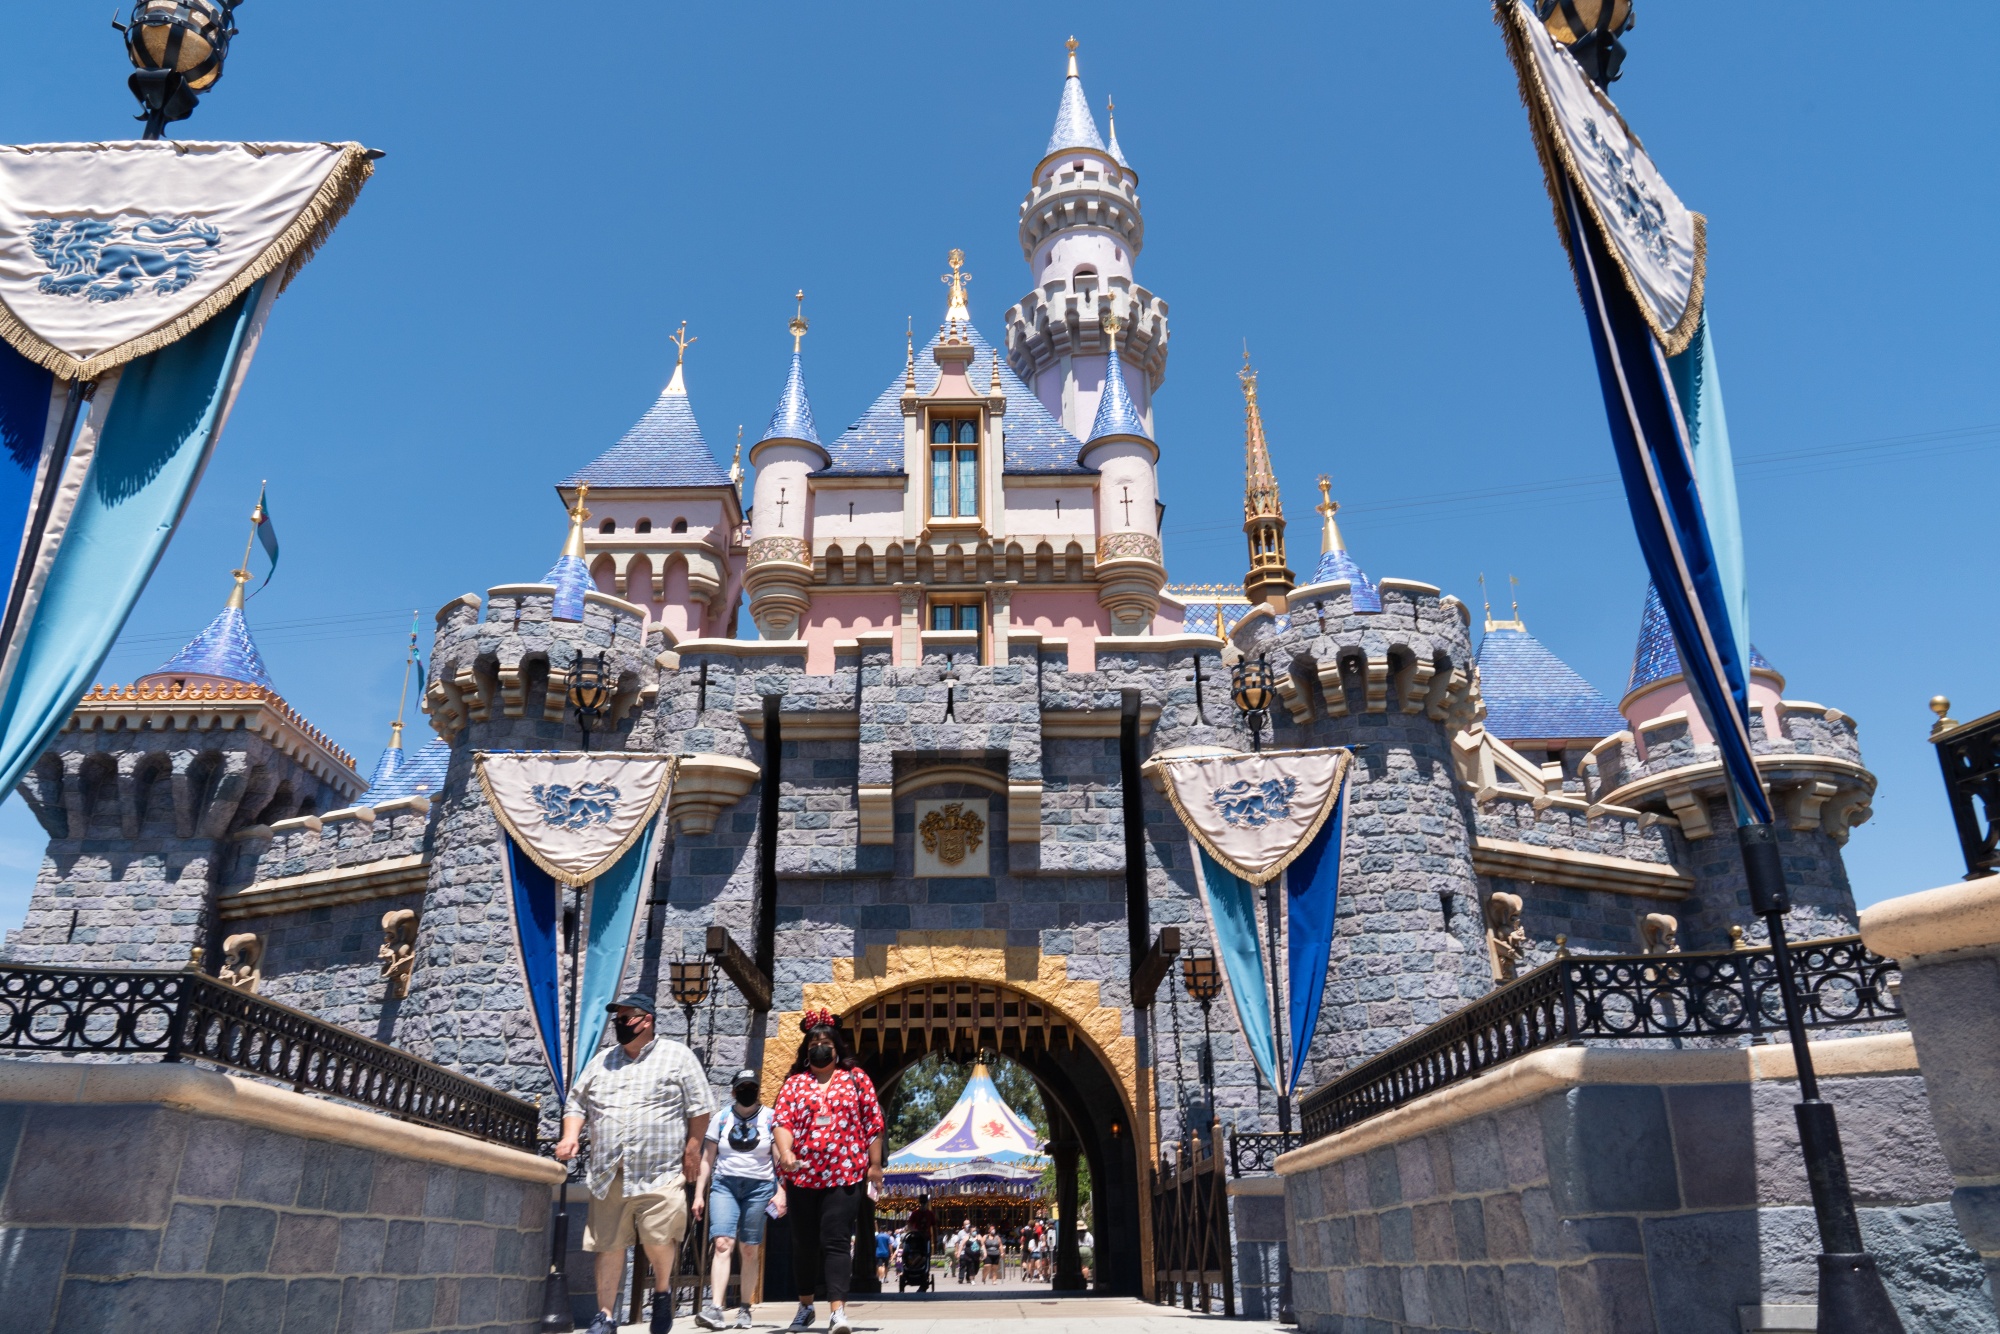 Поездка в диснейленд. Анахайм Калифорния Диснейленд. Парк Диснейленд, Анахайм, Калифорния (Disneyland Park). Sleeping Beauty Castle Диснейленд. Диснейленд Анахайм 1313.